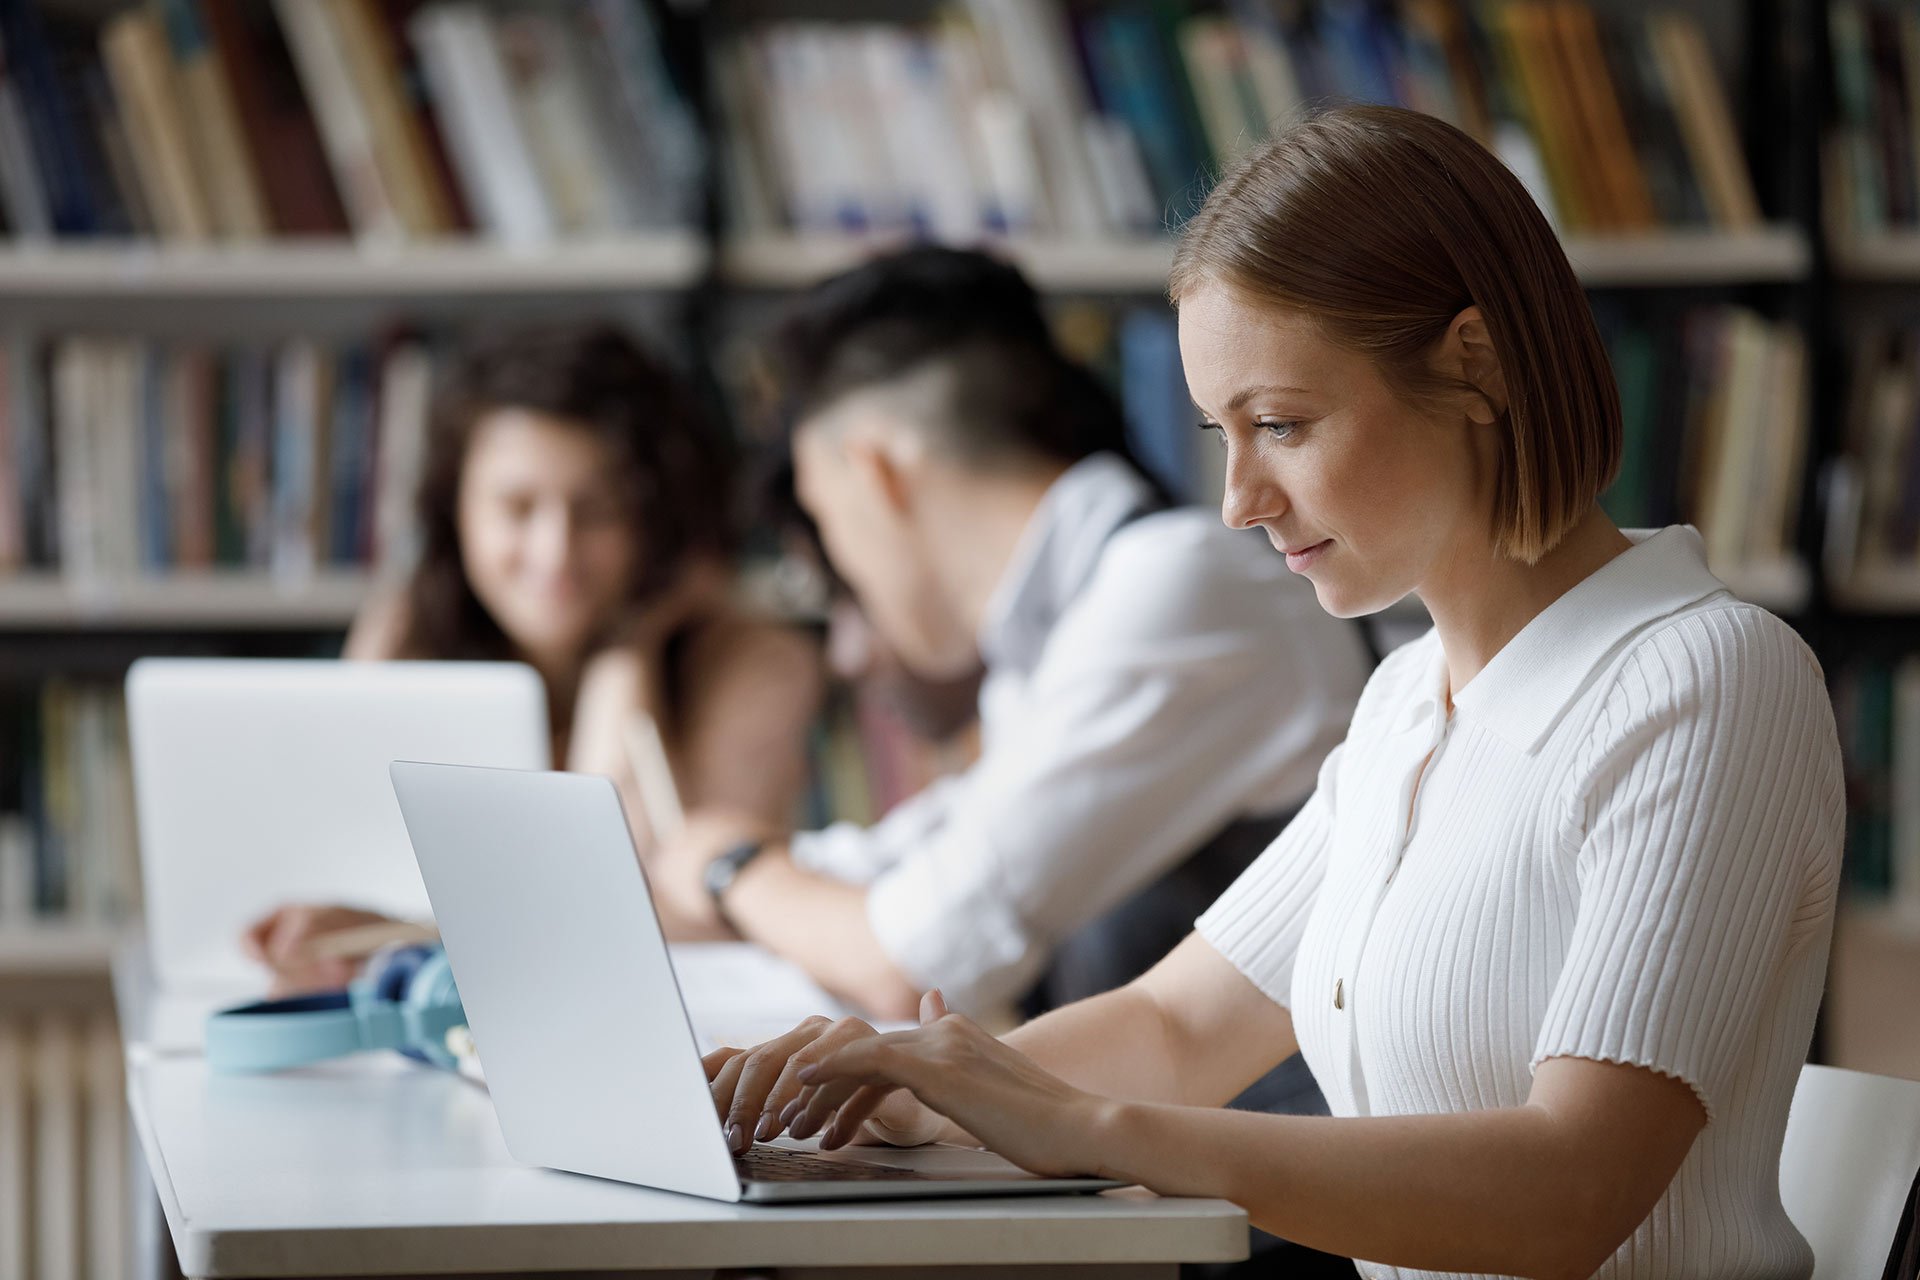 Nuori nainen työskentelee kannettavalla tietokoneella, taustalla näkyy kaksi henkilöä ja kirjahyllyjä